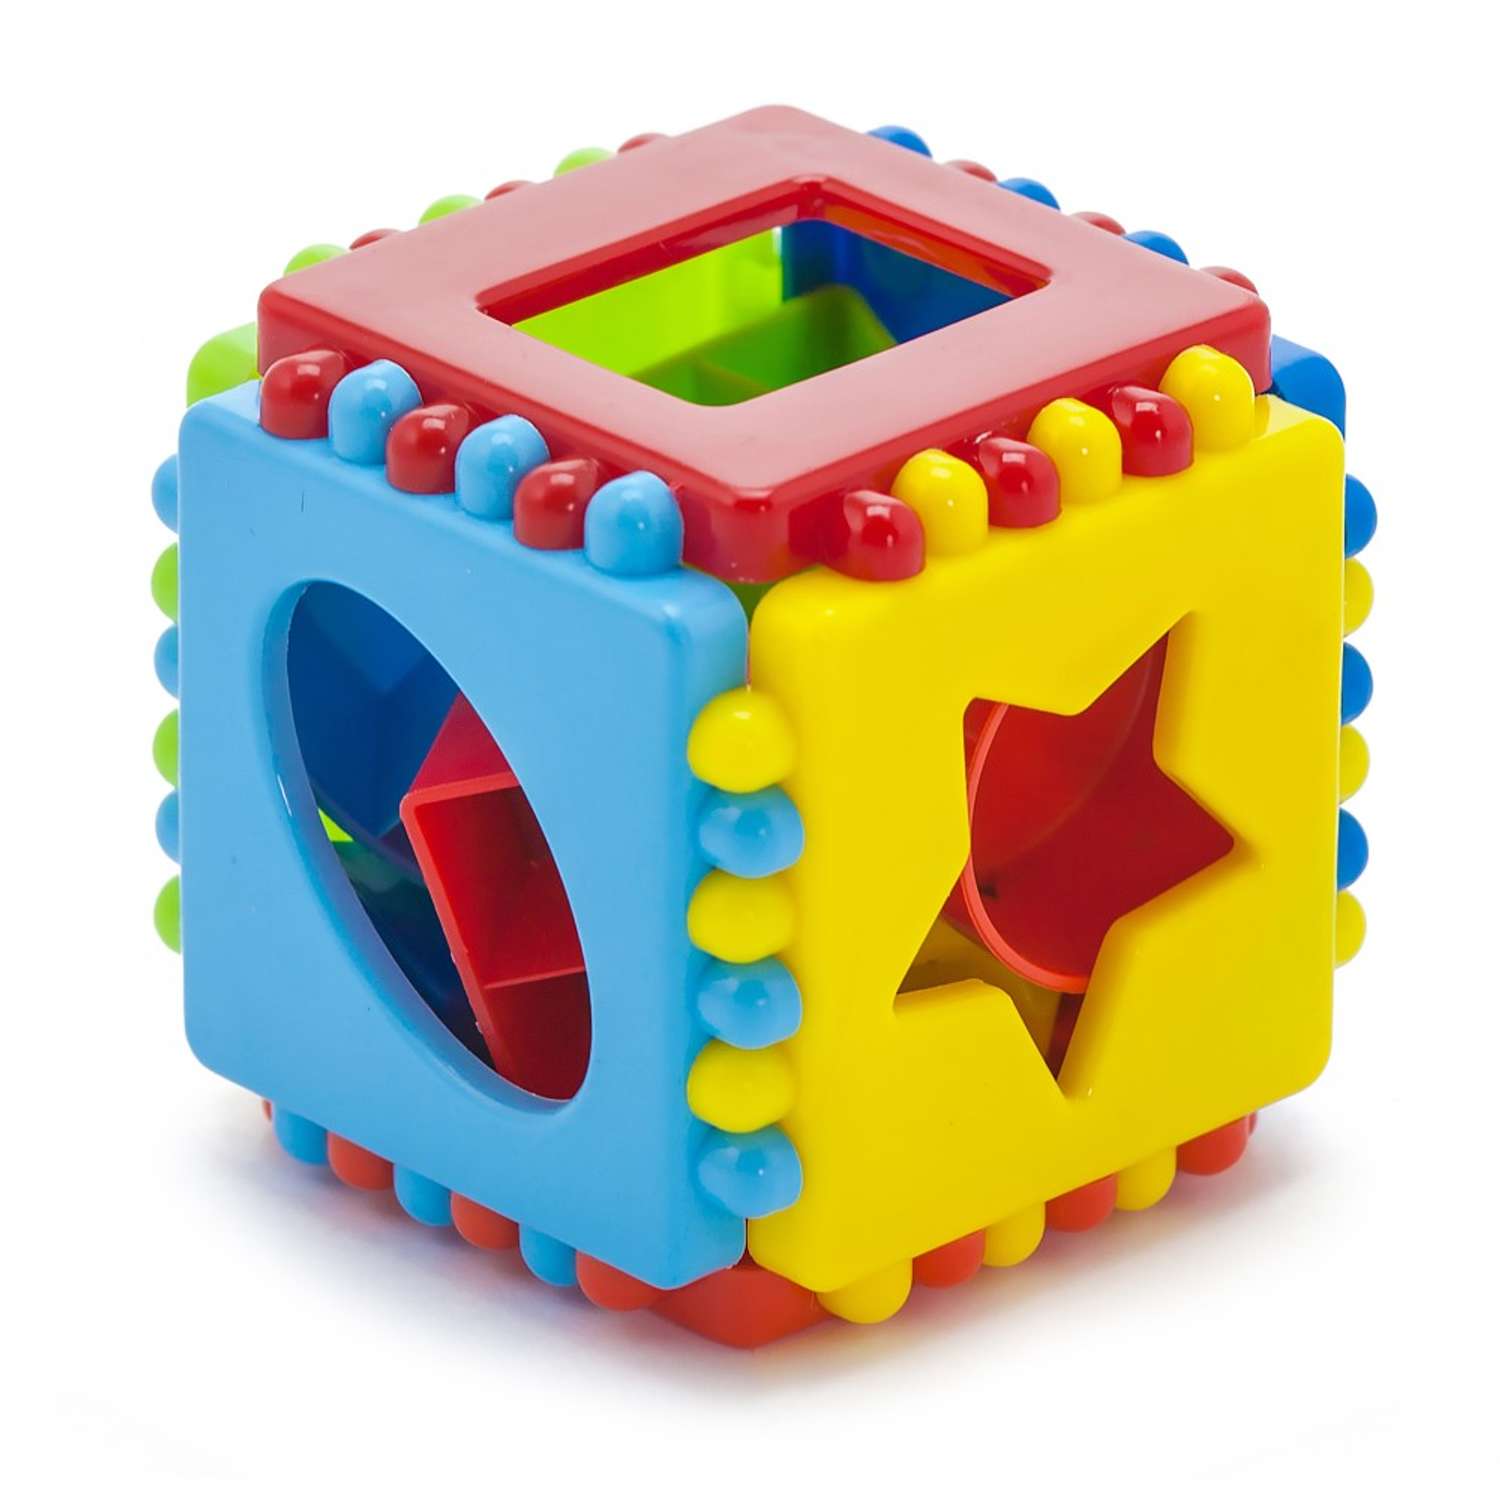 Развивающие игрушки БИПЛАНТ для малышей конструктор Кноп-Кнопыч 61 деталь + Сортер кубик малый + Команда КВА - фото 10